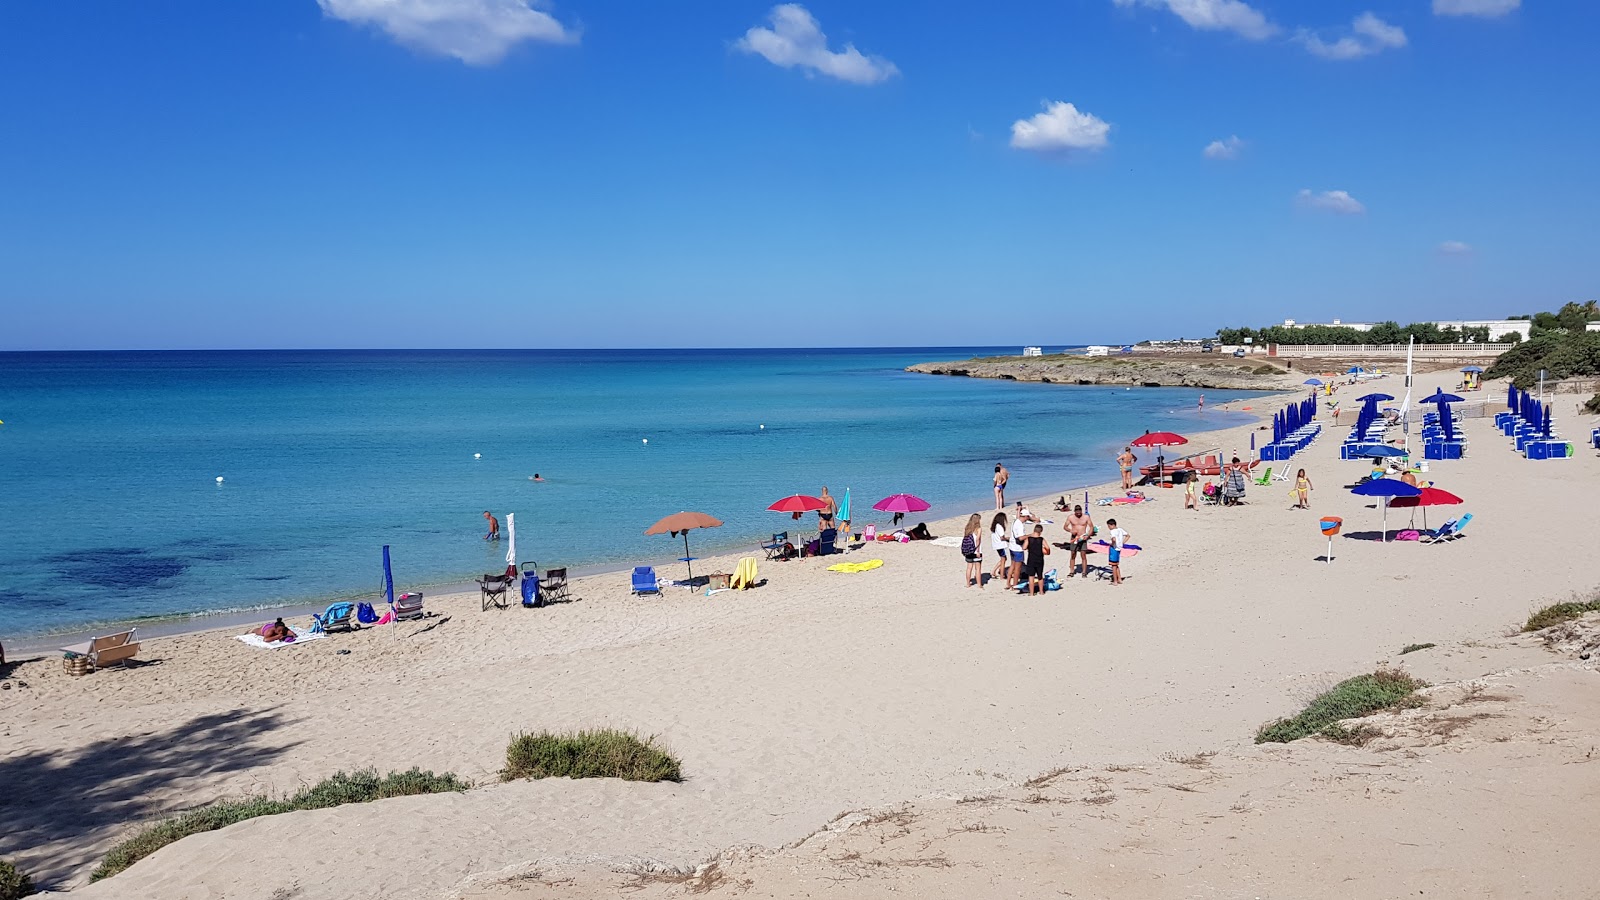 Cesareo beach'in fotoğrafı parlak kum yüzey ile